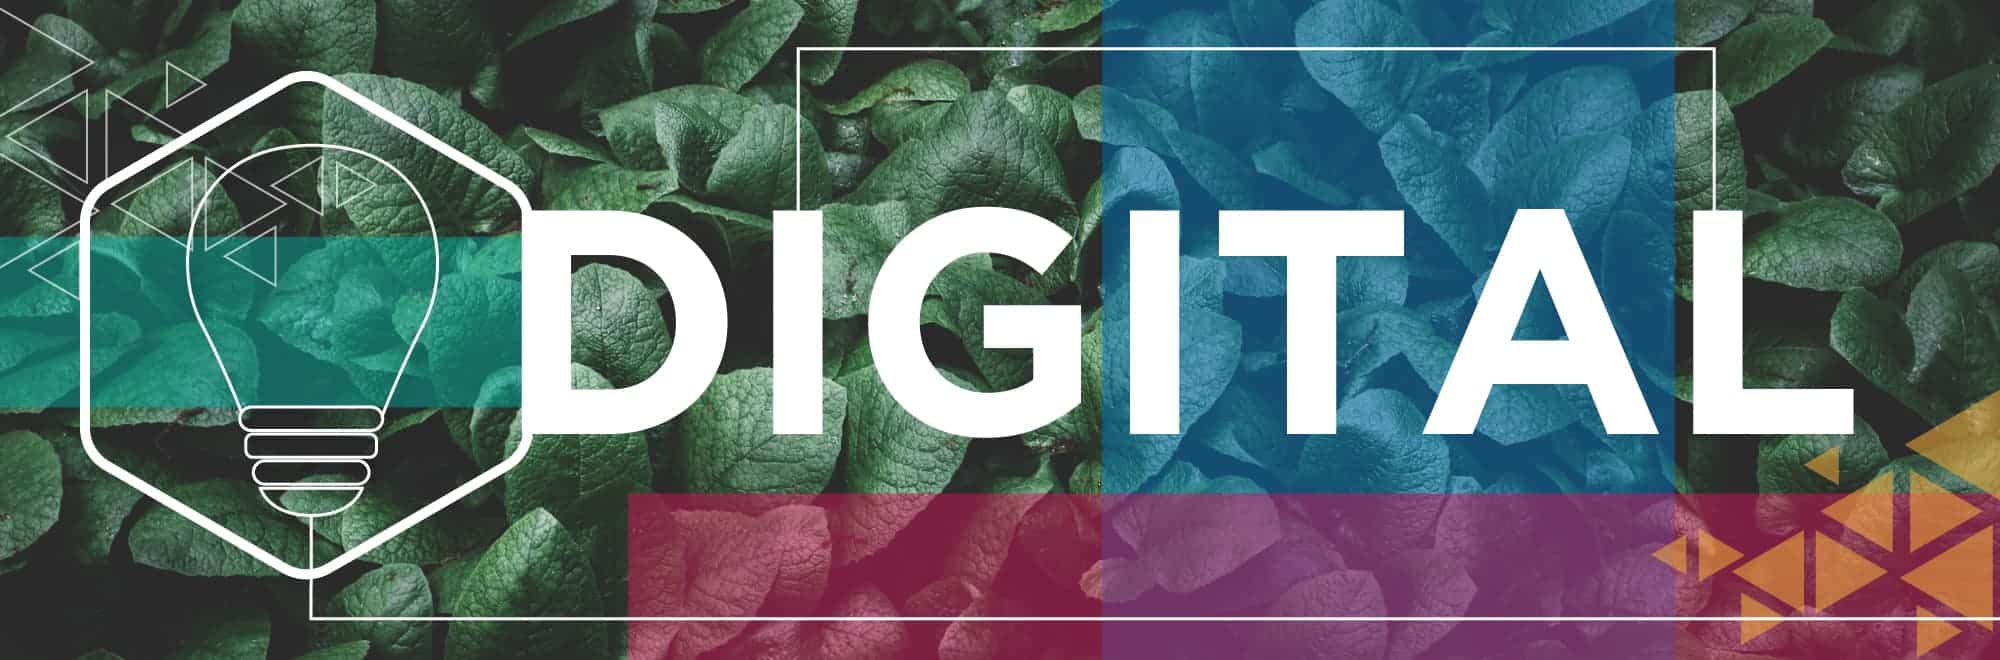 Ideation Digital | Digital Marketing Agency